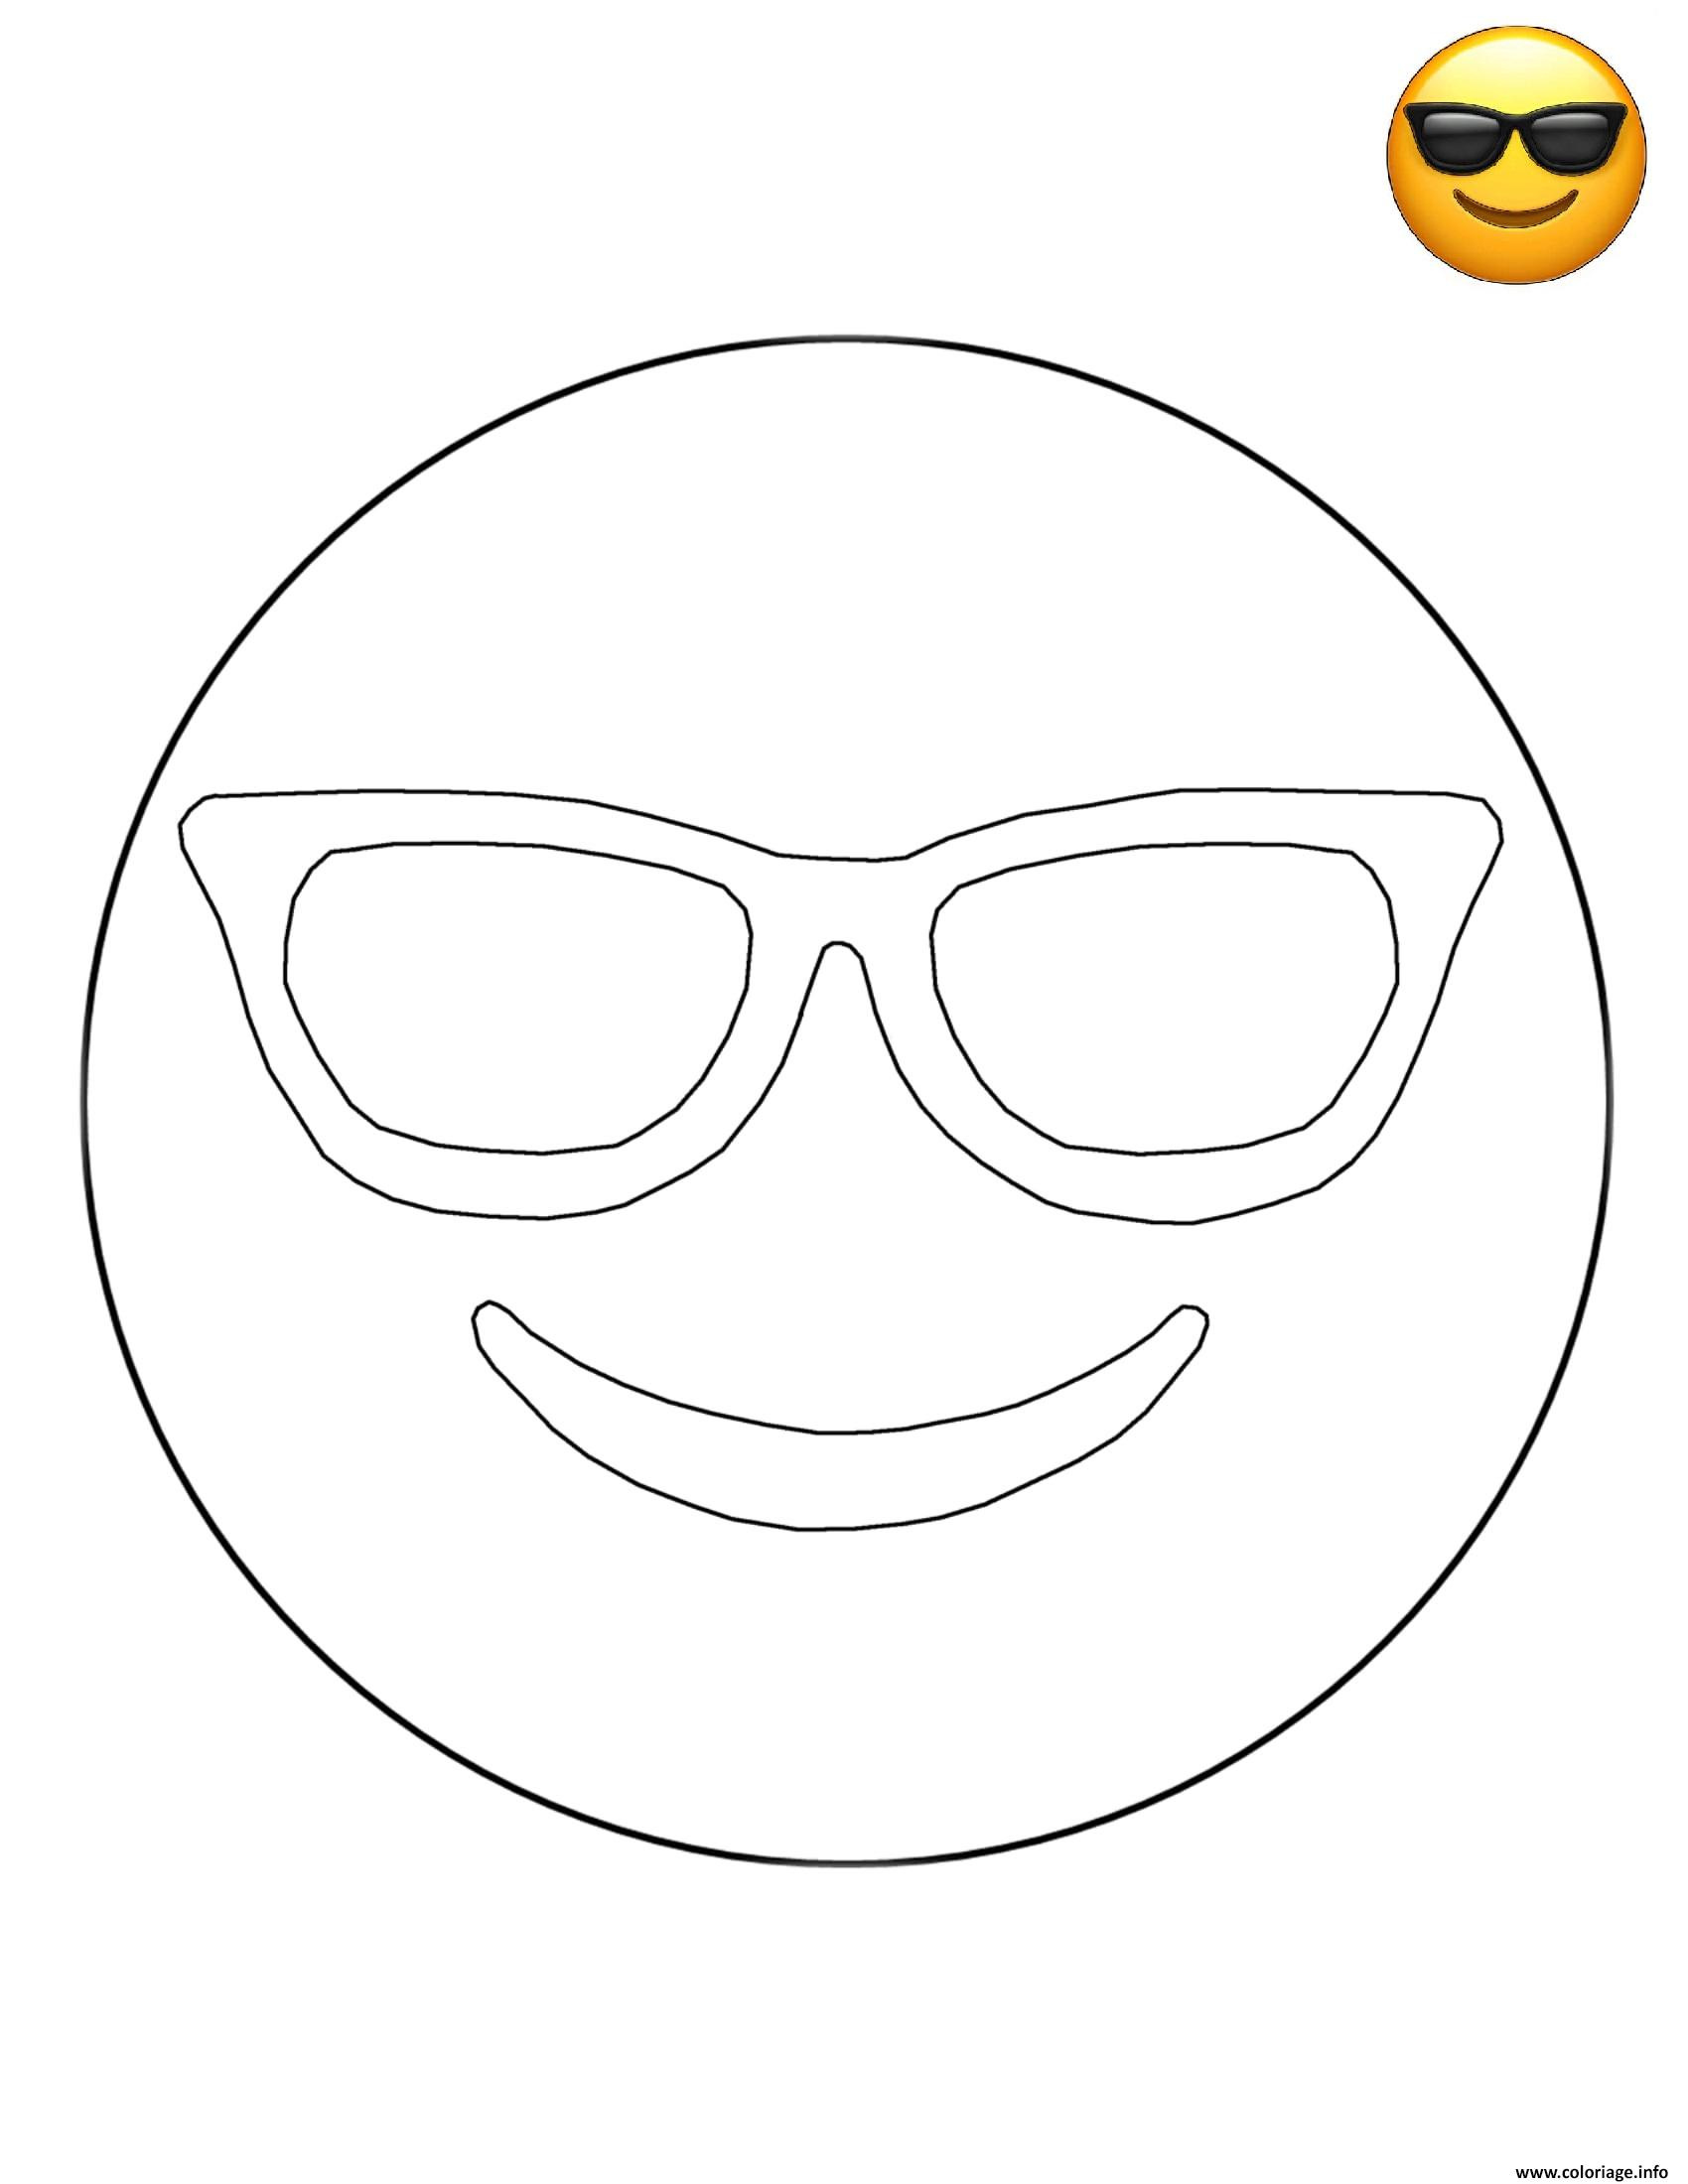 dessin coloriage emoji